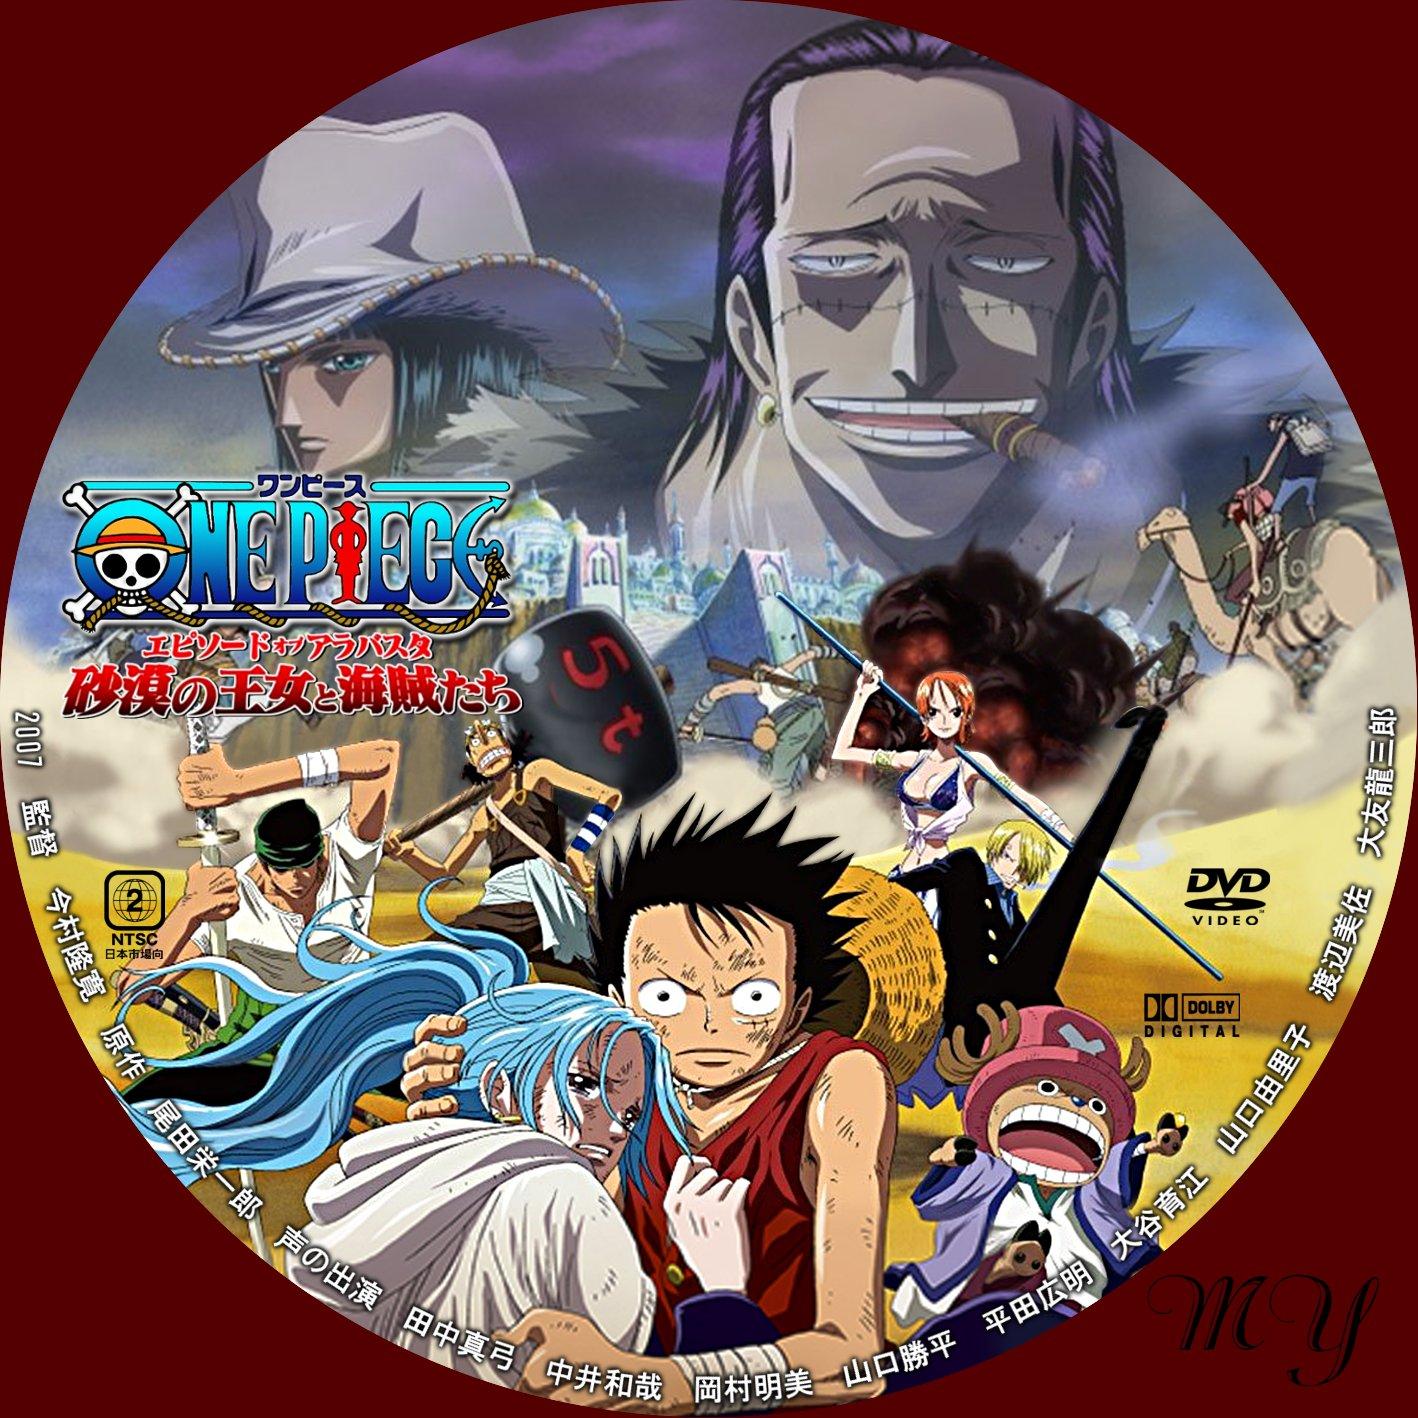 ほにょほにょな一日無料dvd ラベル製作室 One Piece ワンピース エピソード オブ アラバスタ 砂漠の王女と海賊たち